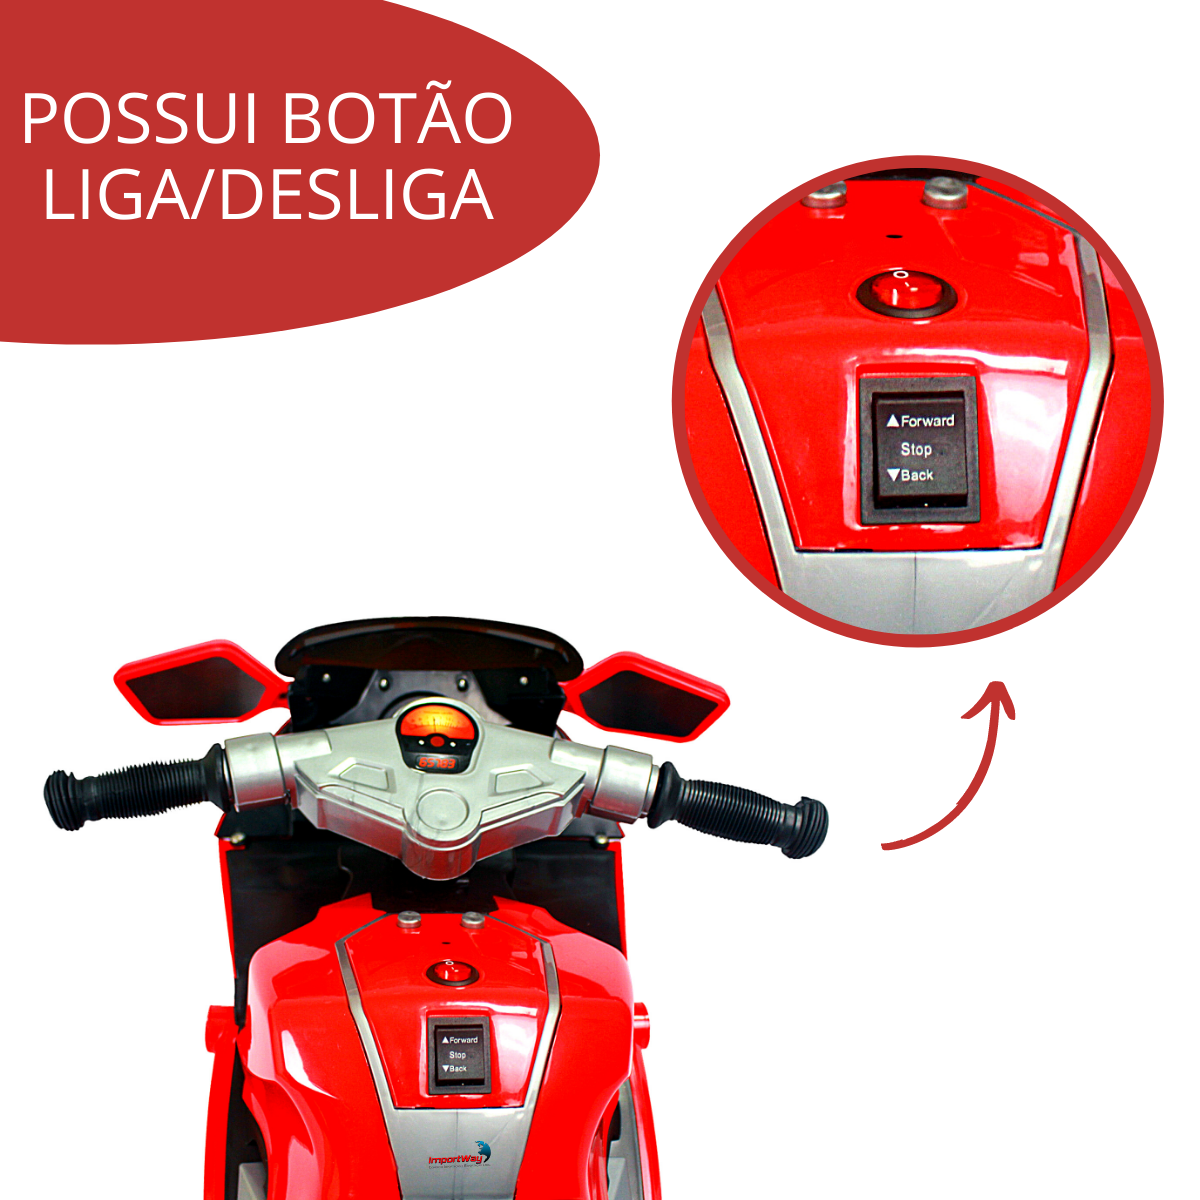 Mini Moto Elétrica Infantil Vermelha Triciclo Para Crianças - LCG ELETRO